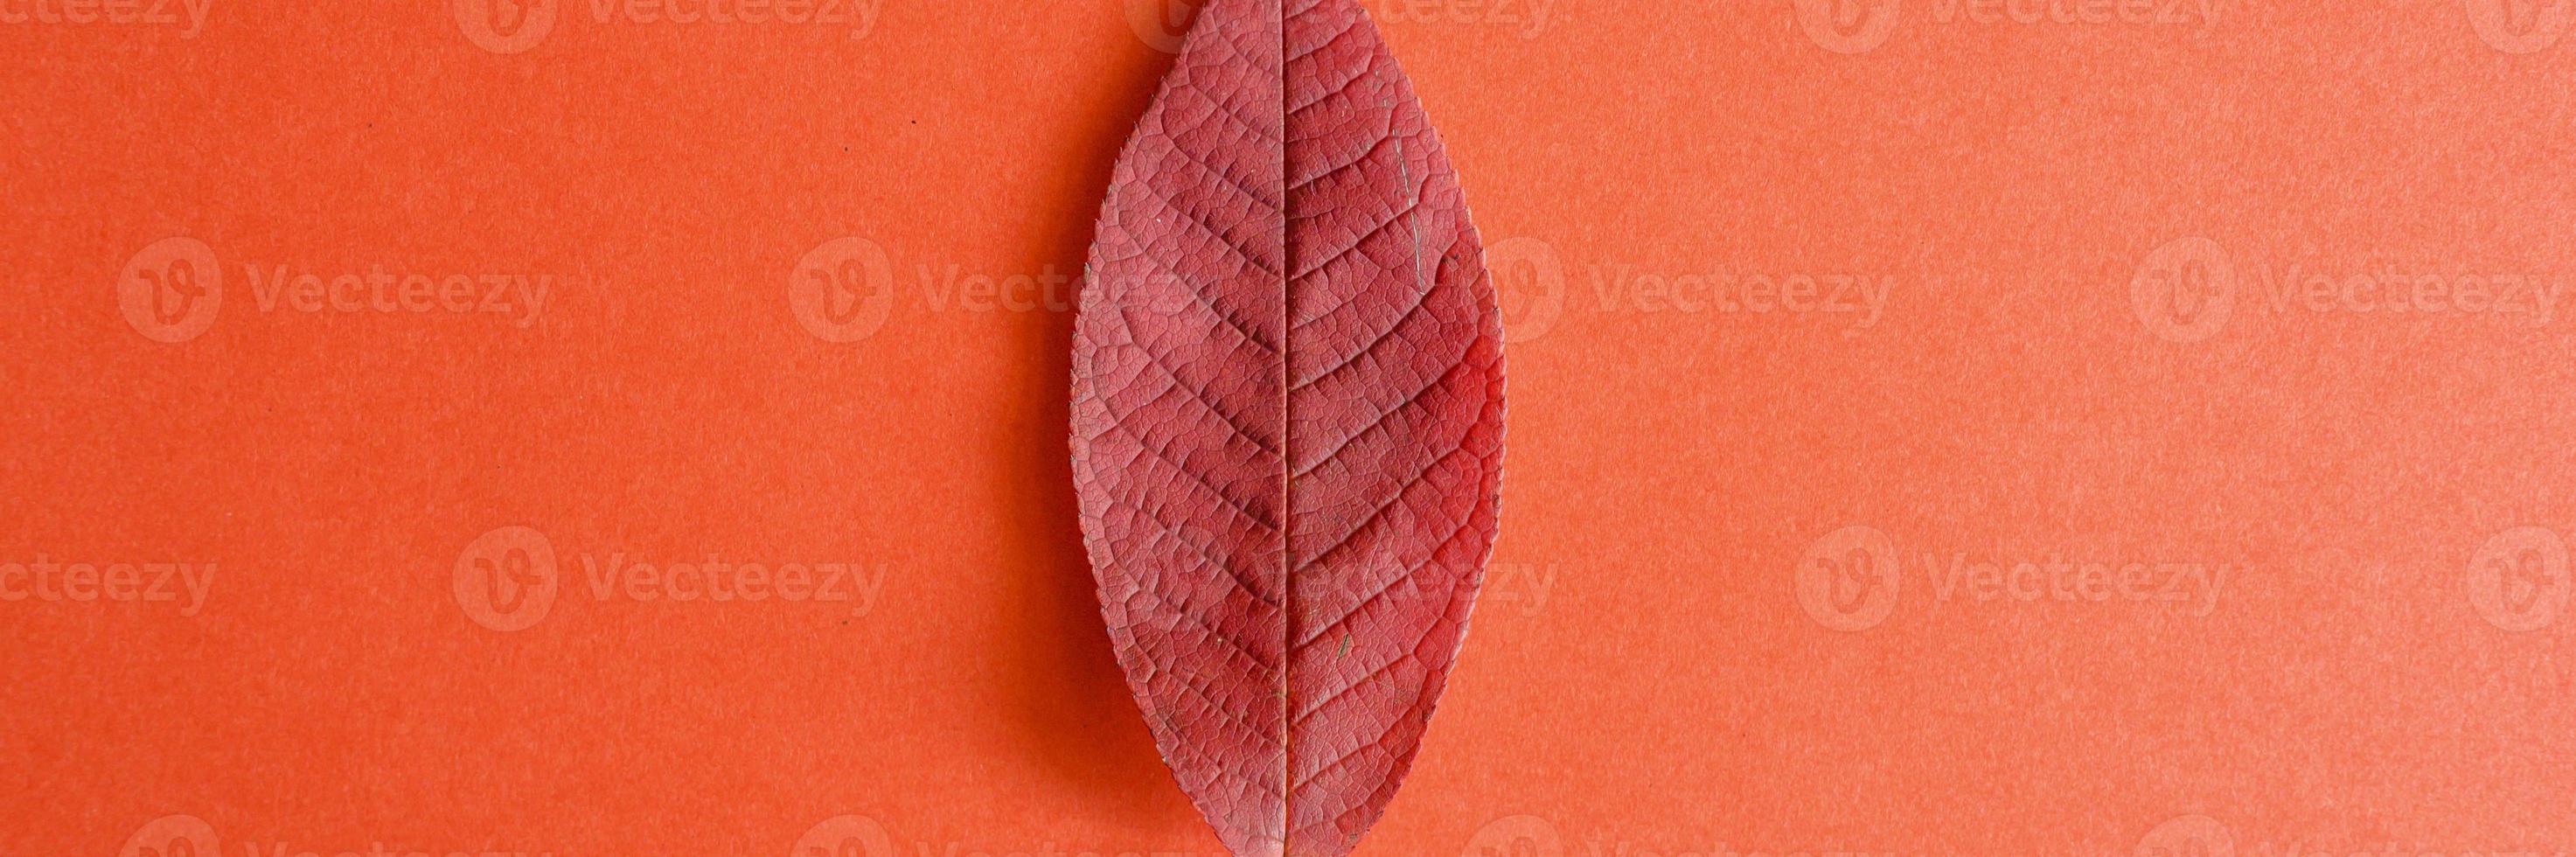 folha vermelha de outono cereja caída em um fundo de papel vermelho foto